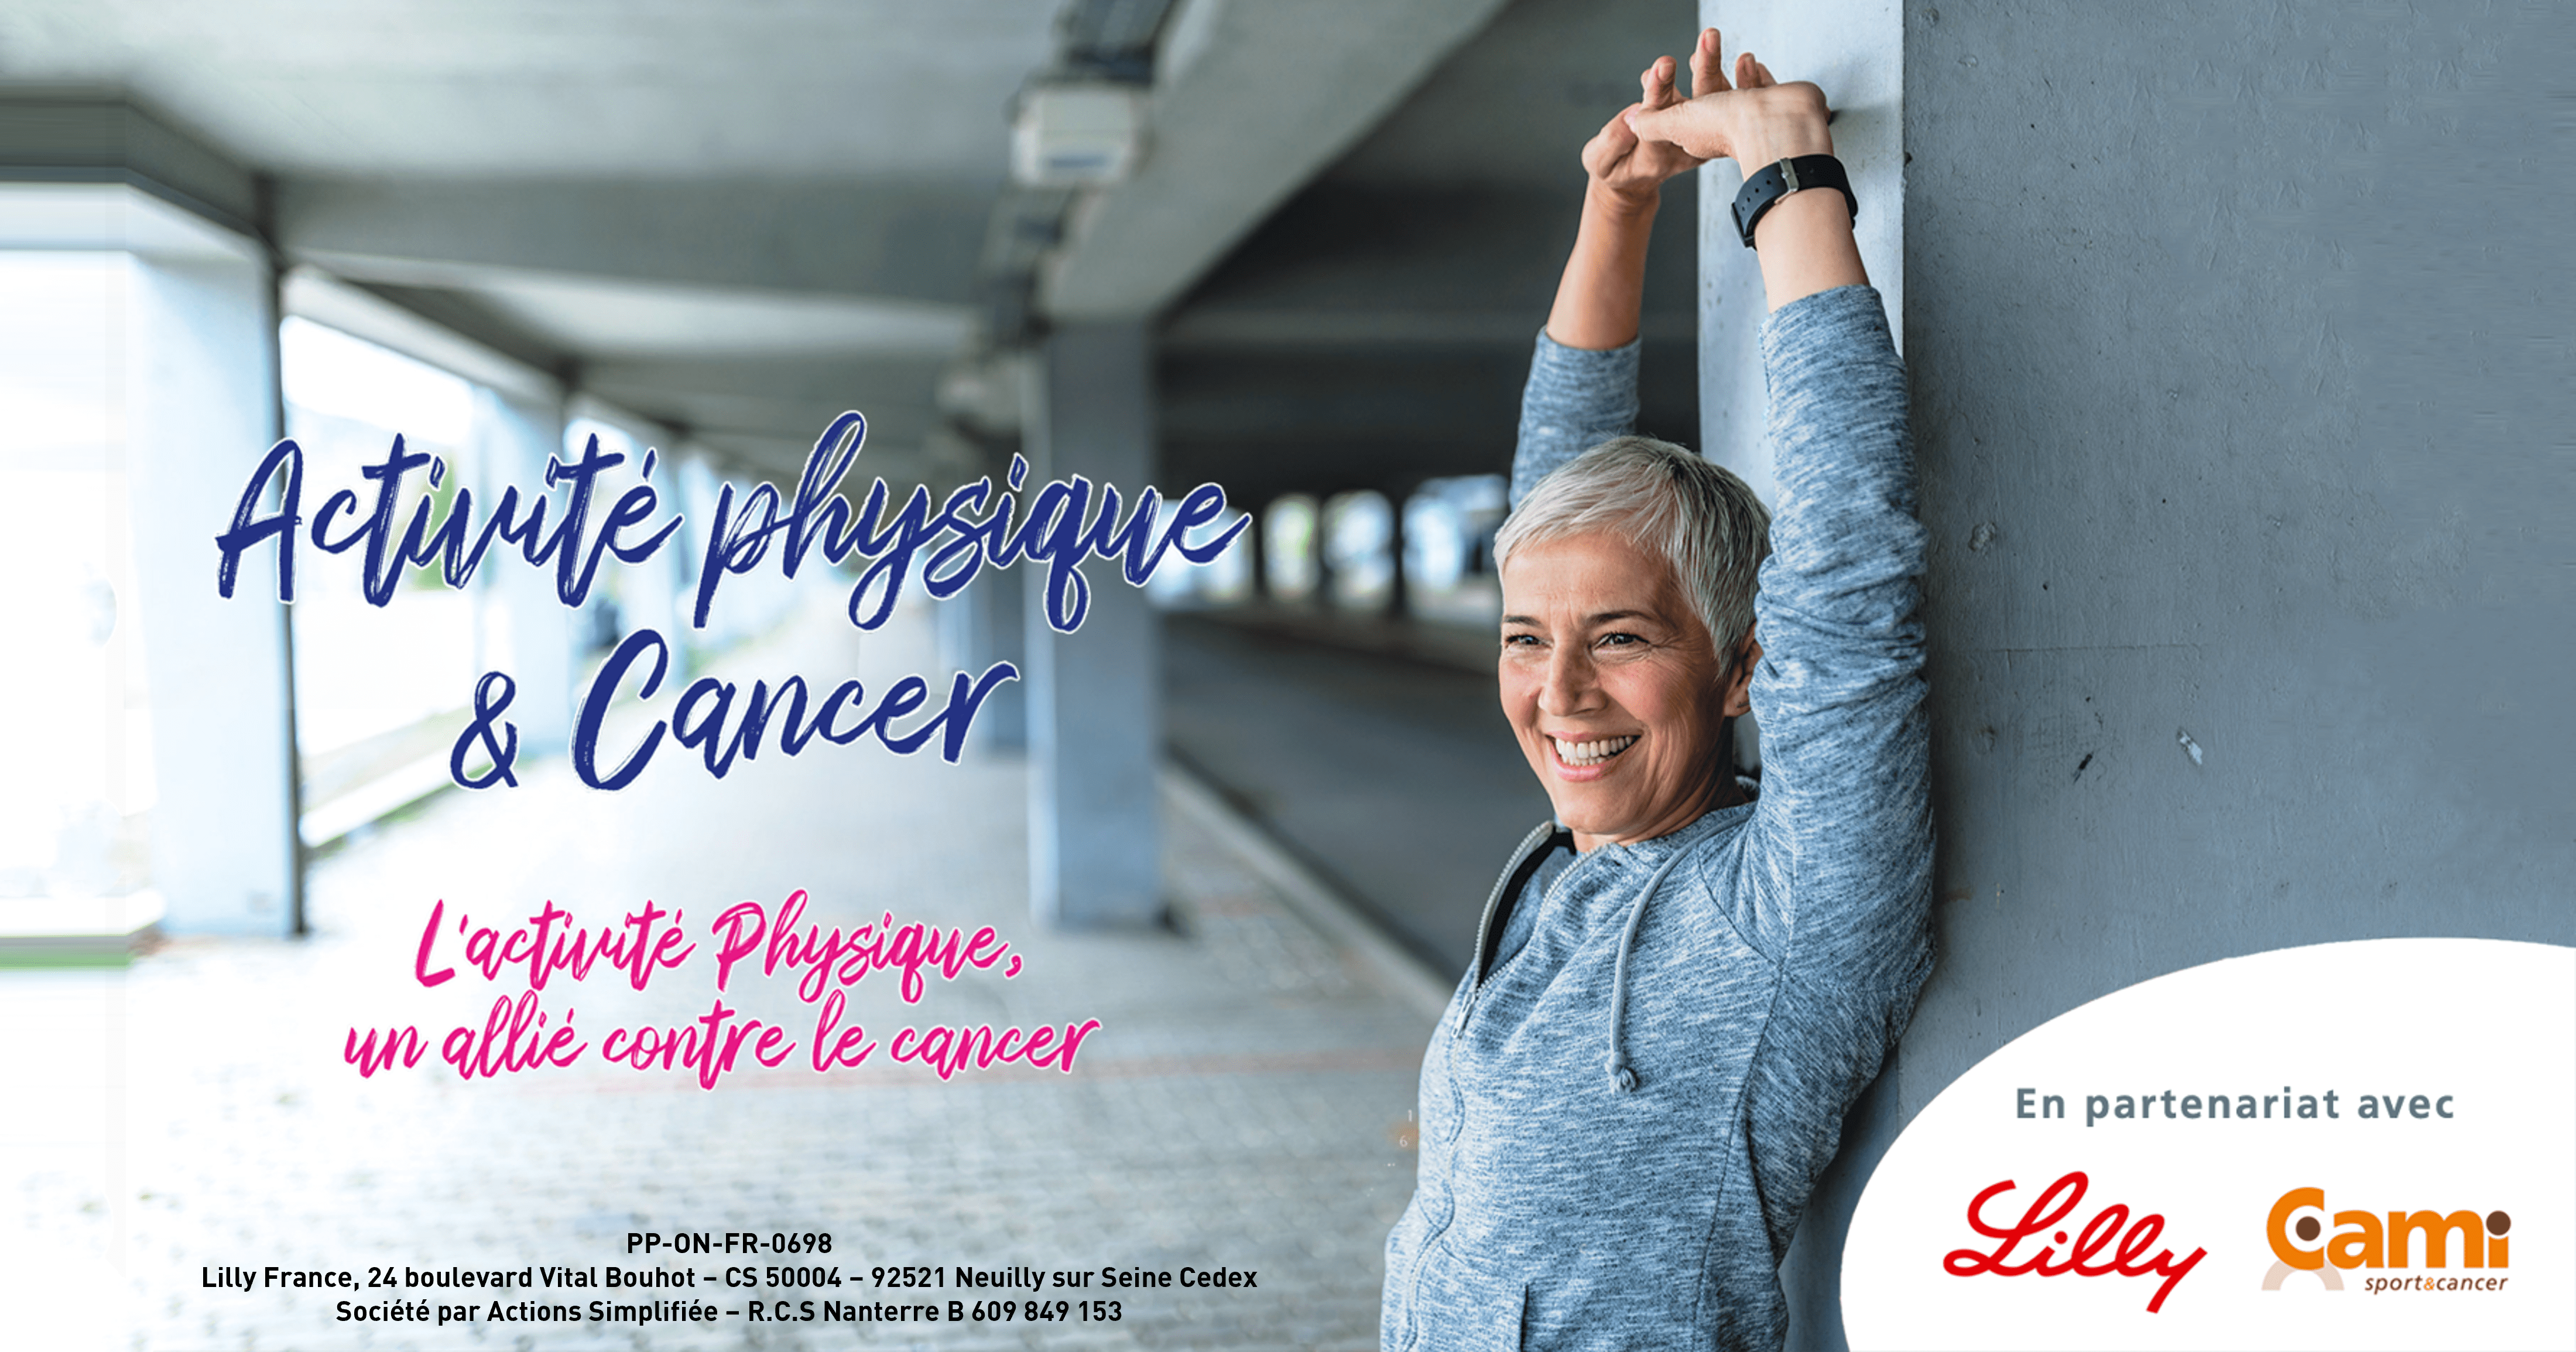 La CAMI Sport & Cancer et le laboratoire Lilly France  poursuivent et enrichissent leur partenariat pour sensibiliser  à la pratique de l’activité physique thérapeutique en cancérologie